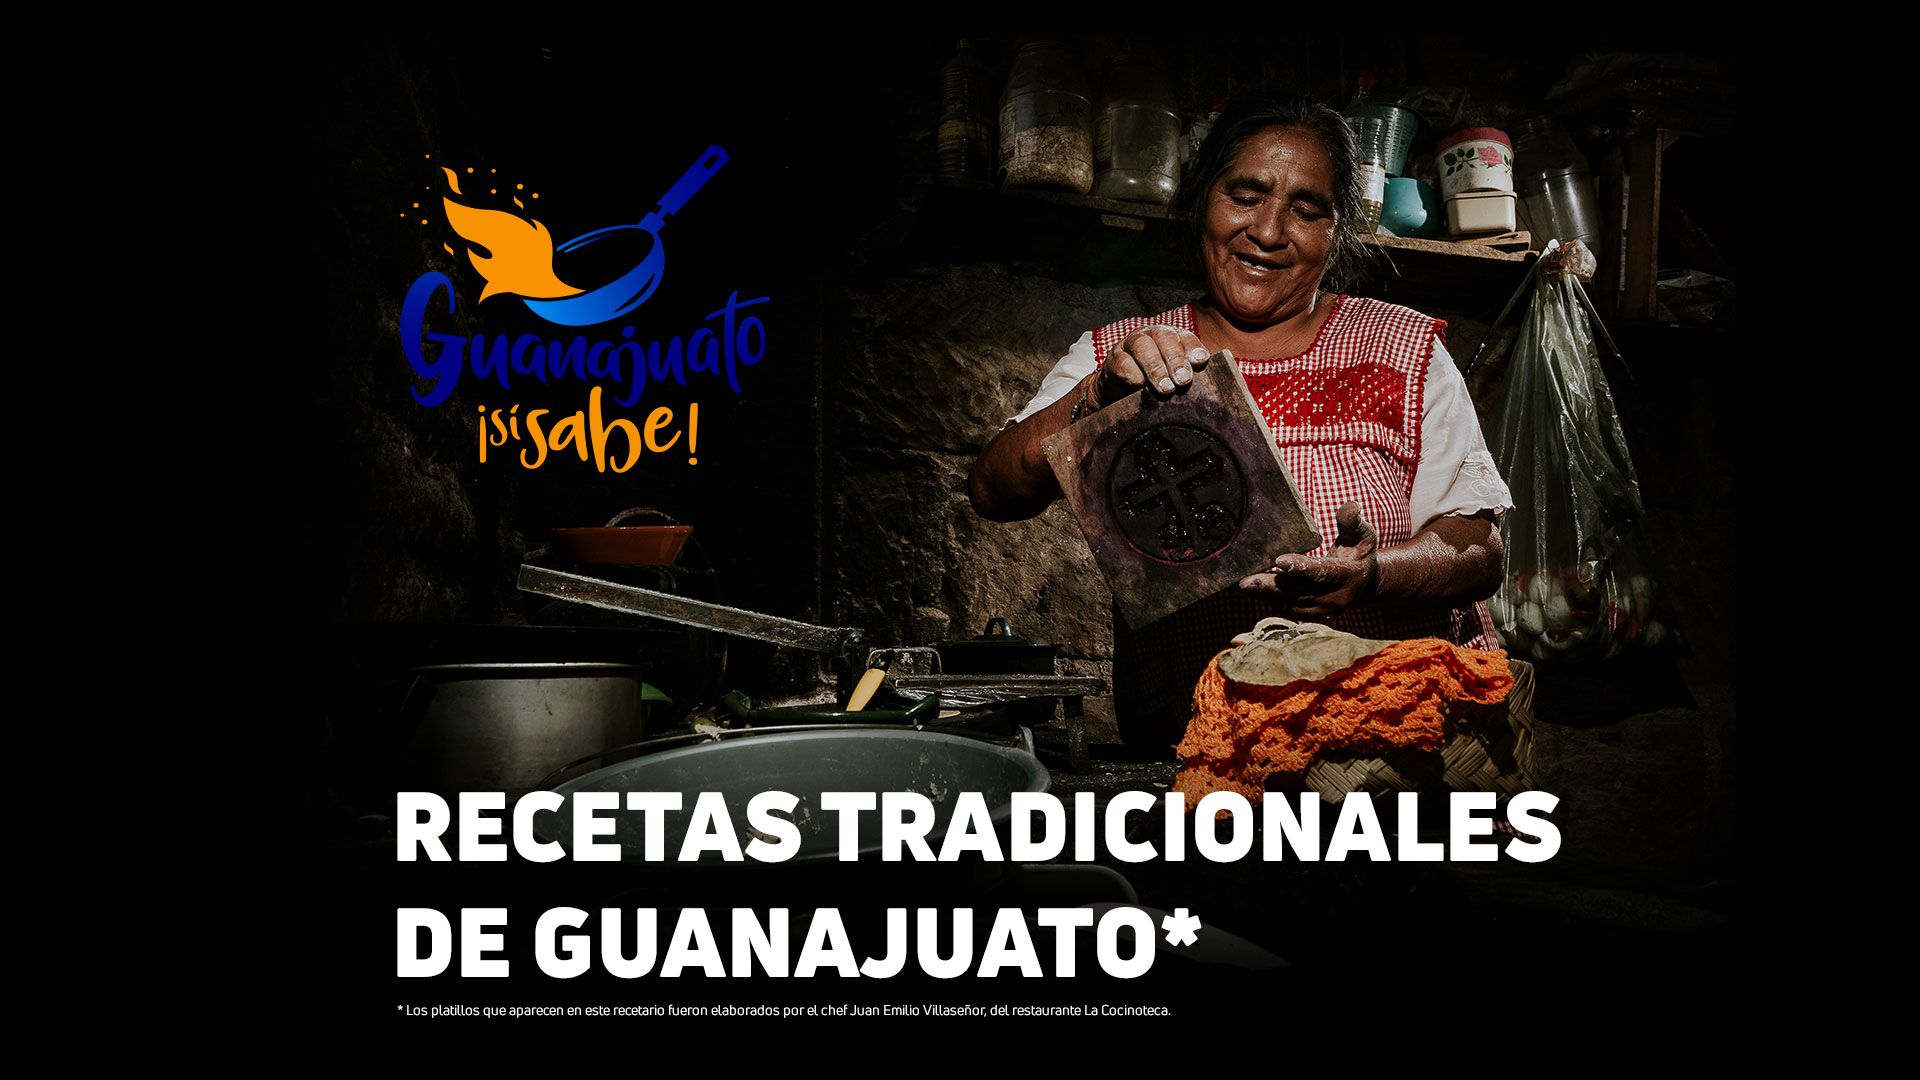 Recetas tradicionales de Guanajuato